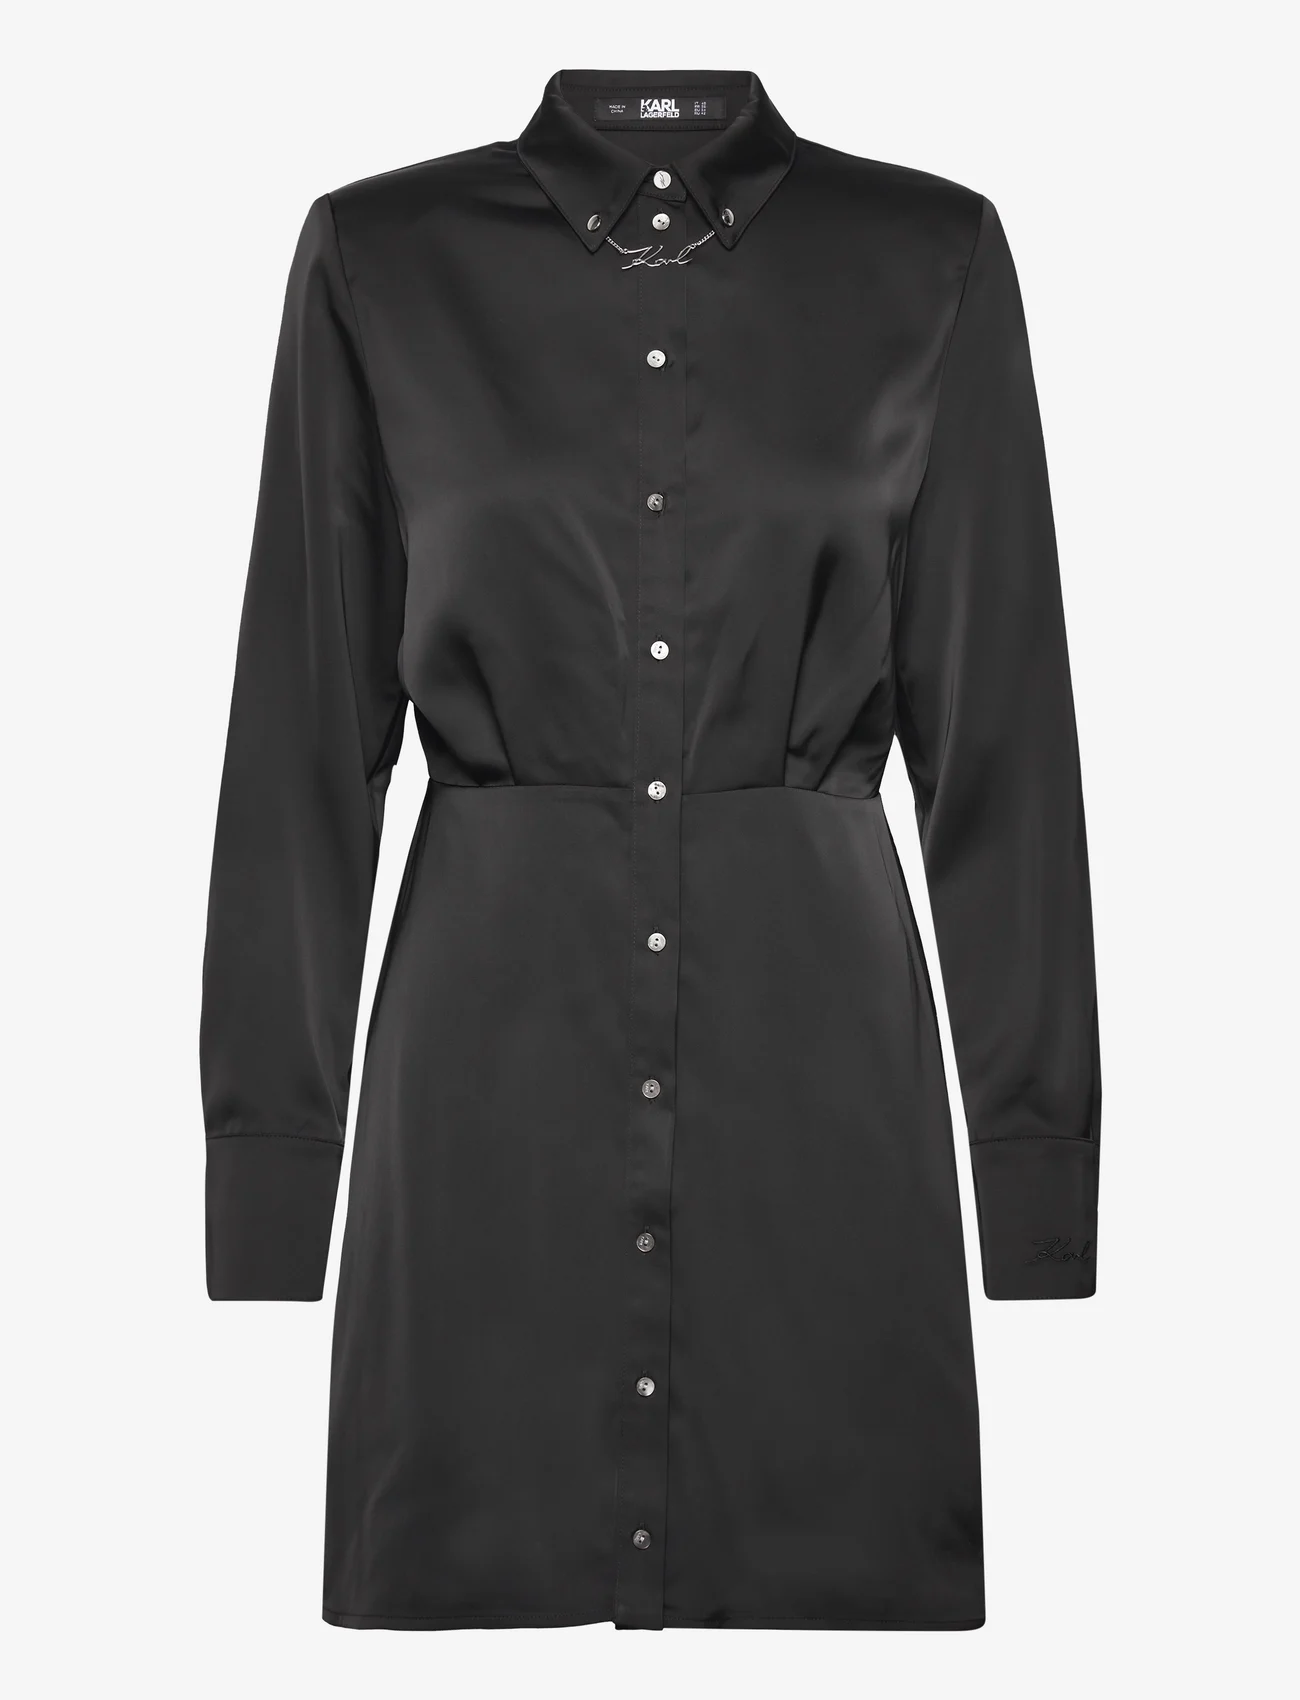 Karl Lagerfeld - karl charm satin shirt dress - skjortekjoler - black - 0